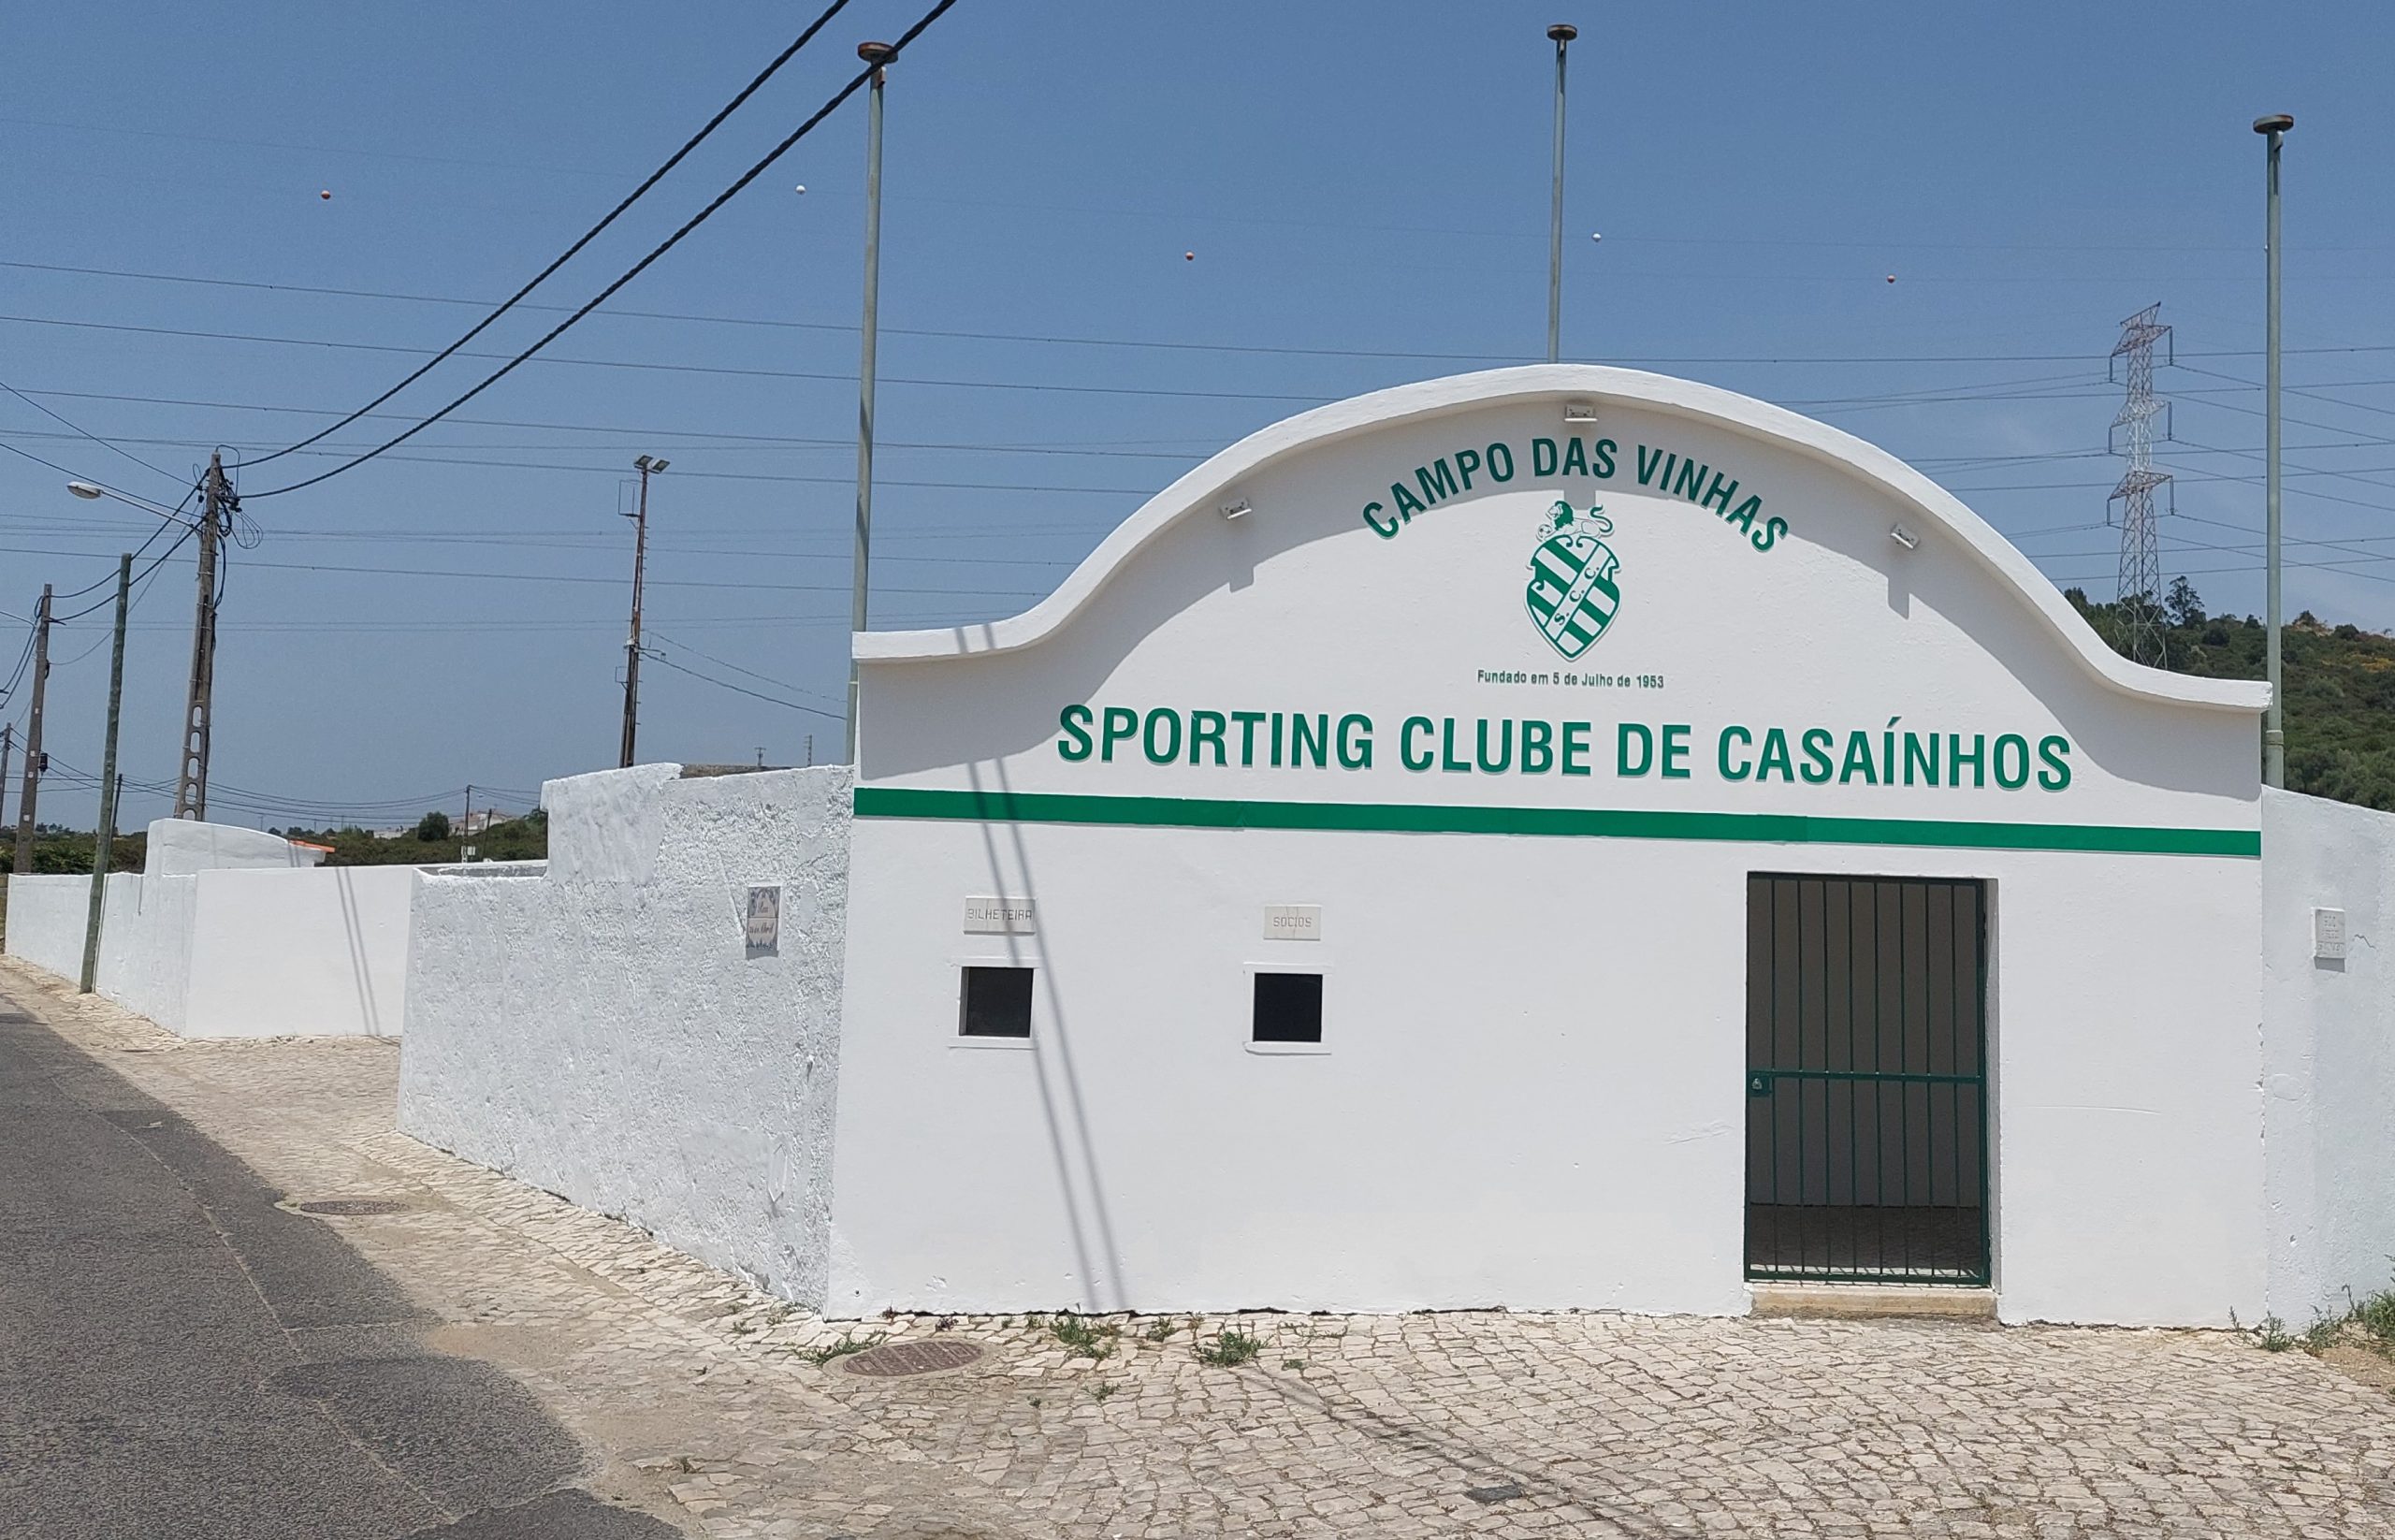 69º Aniversário – Sporting Clube de Casaínhos – Pintura, embelezamento dos muros e fachada de entrada.